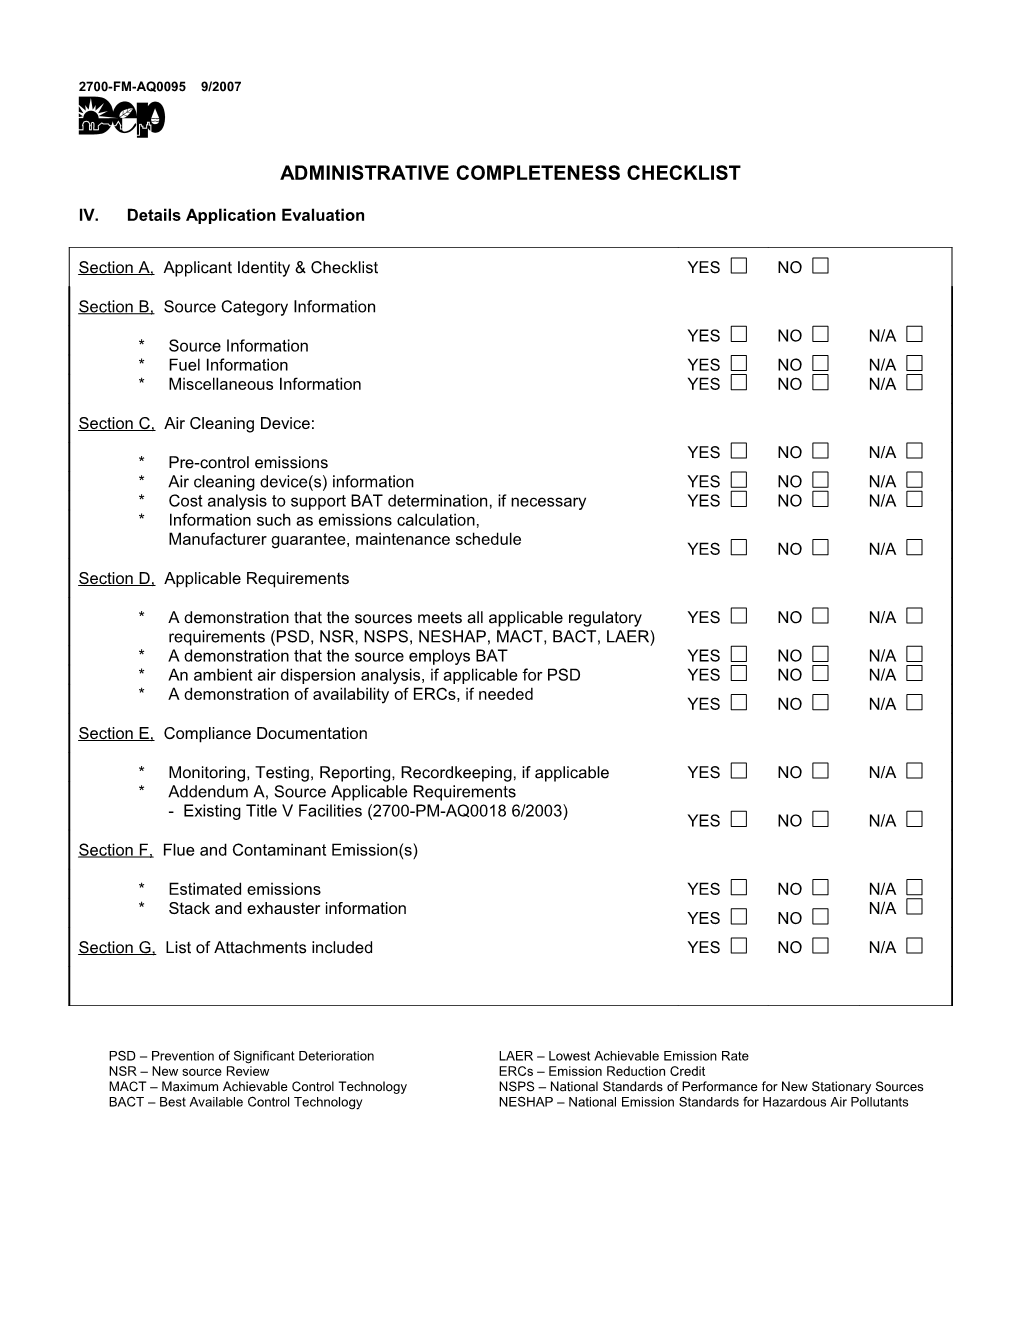 Administrative Completeness Checklist